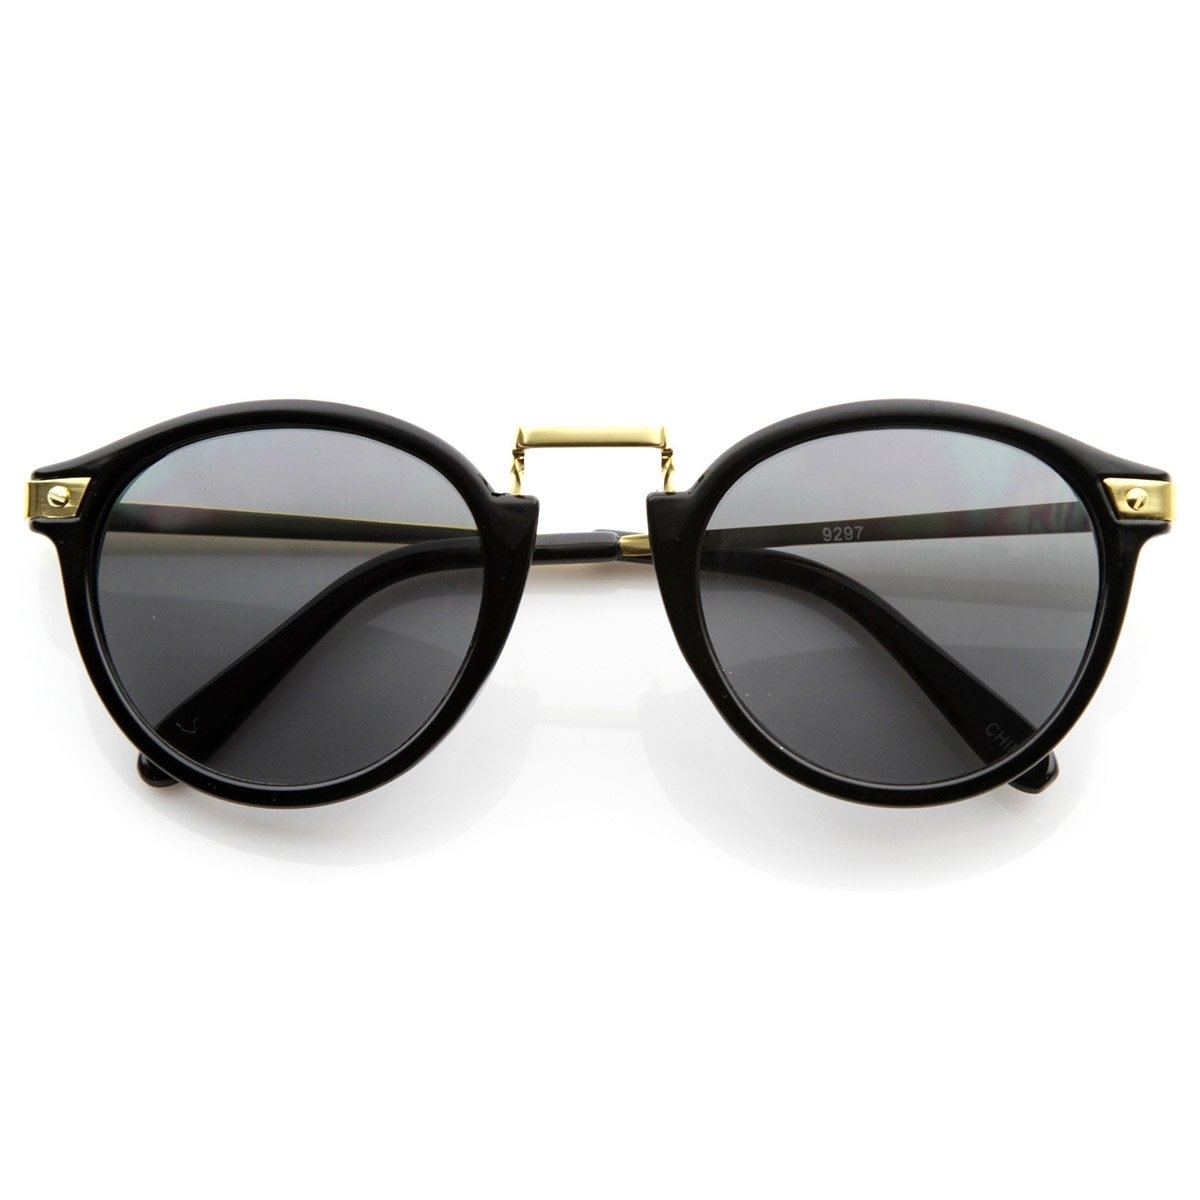 Vintage Inspired Round Horned Rim P-3 Frame Retro Sunglasses - Havana Amber